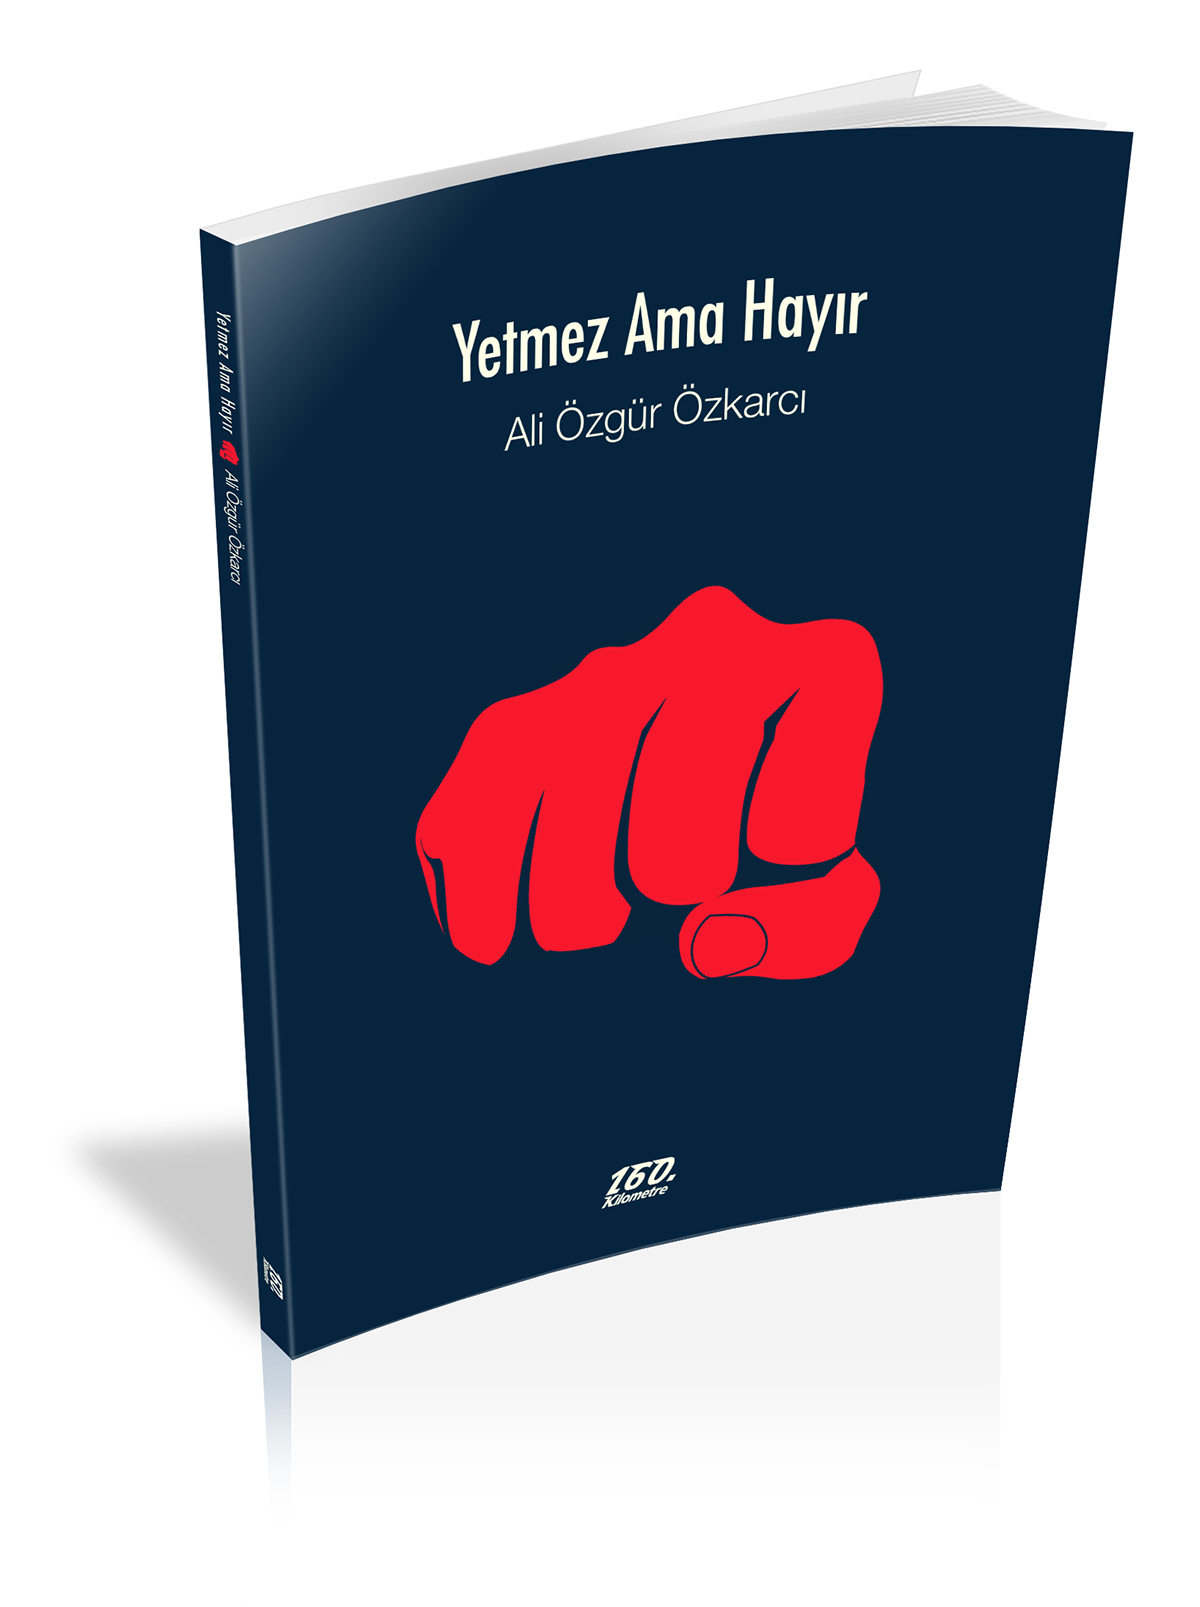 book books book cover book cover degisn KITAP KAPAĞI  kitap kapağı kitap kapak tasarımı